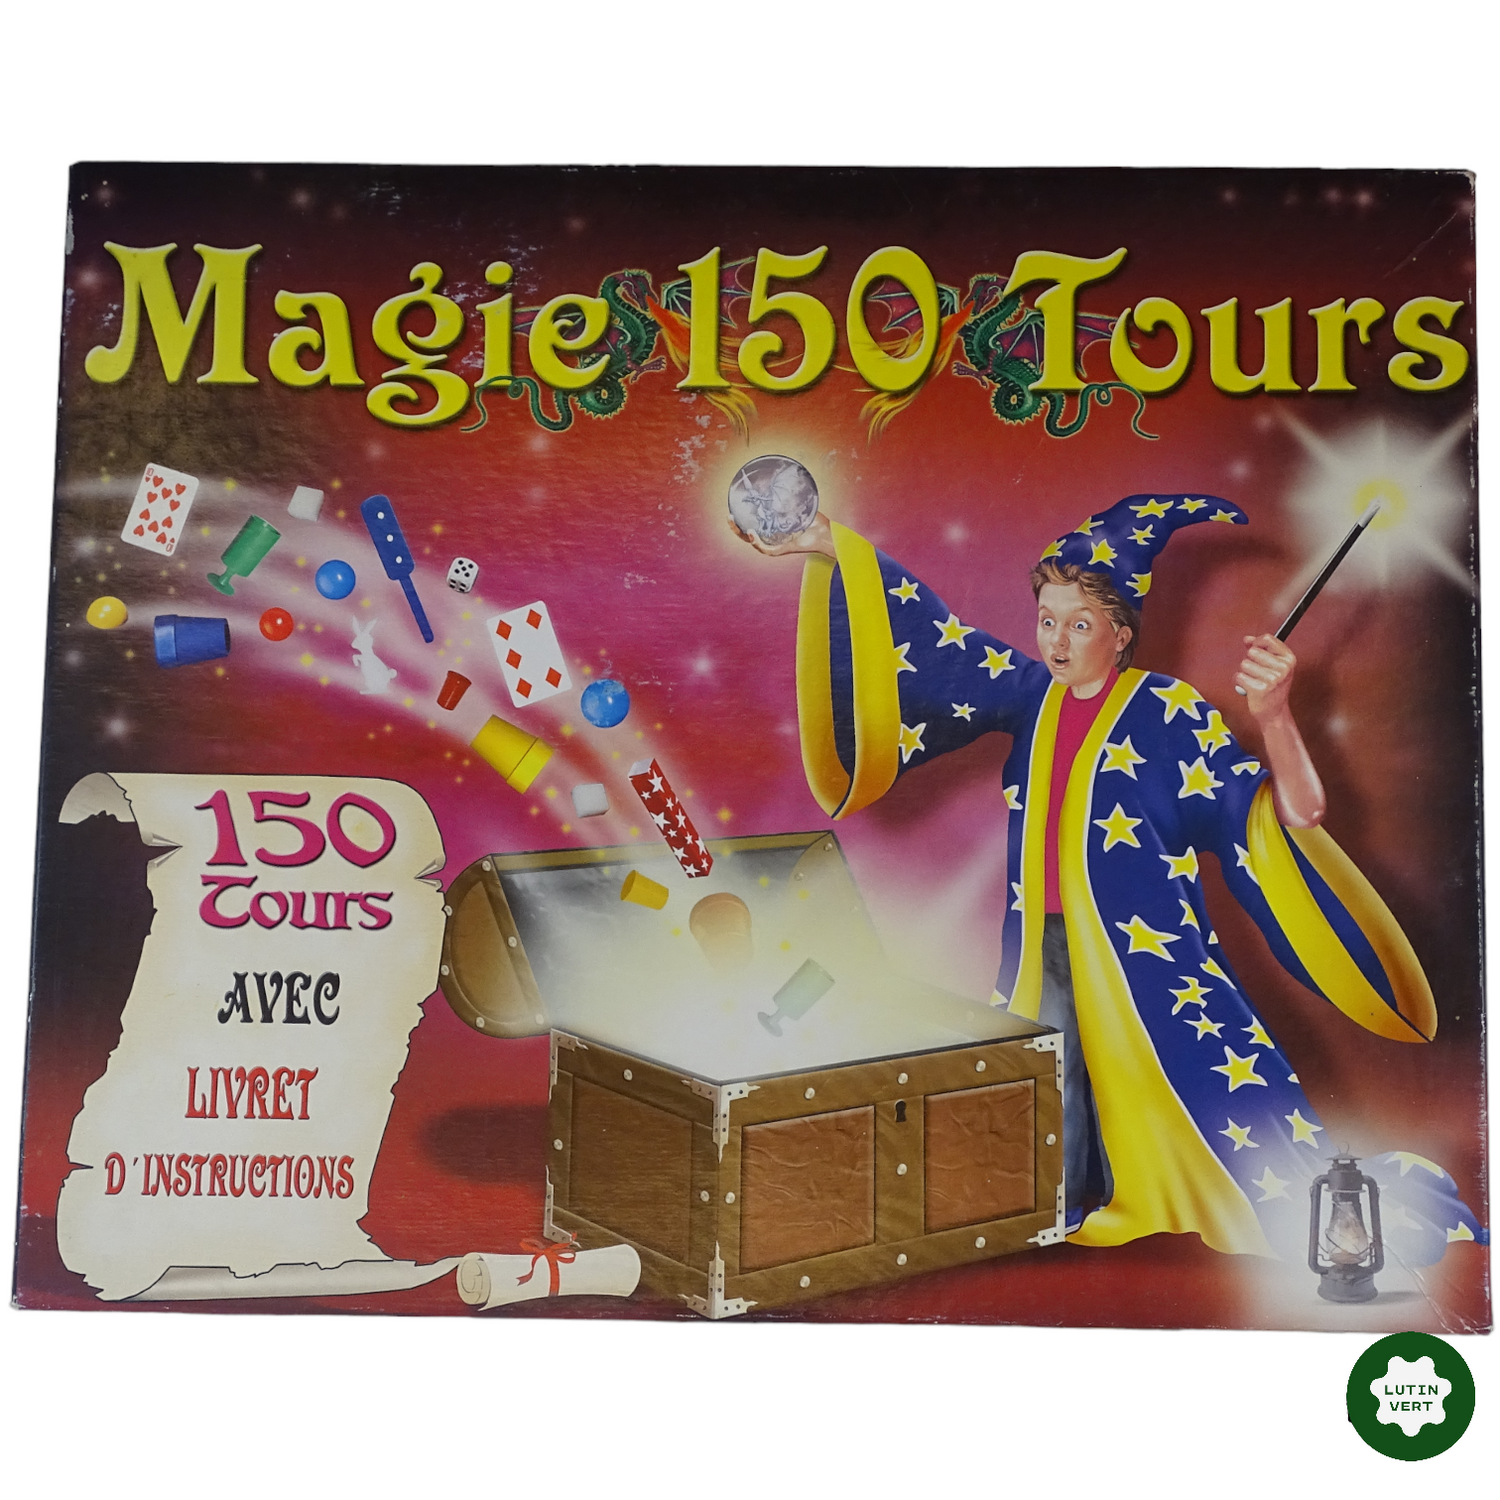 Coffret de magie Ferriot - Accessoires et livret descriptif de 100 tours -  Pour enfants à partir de 6 ans